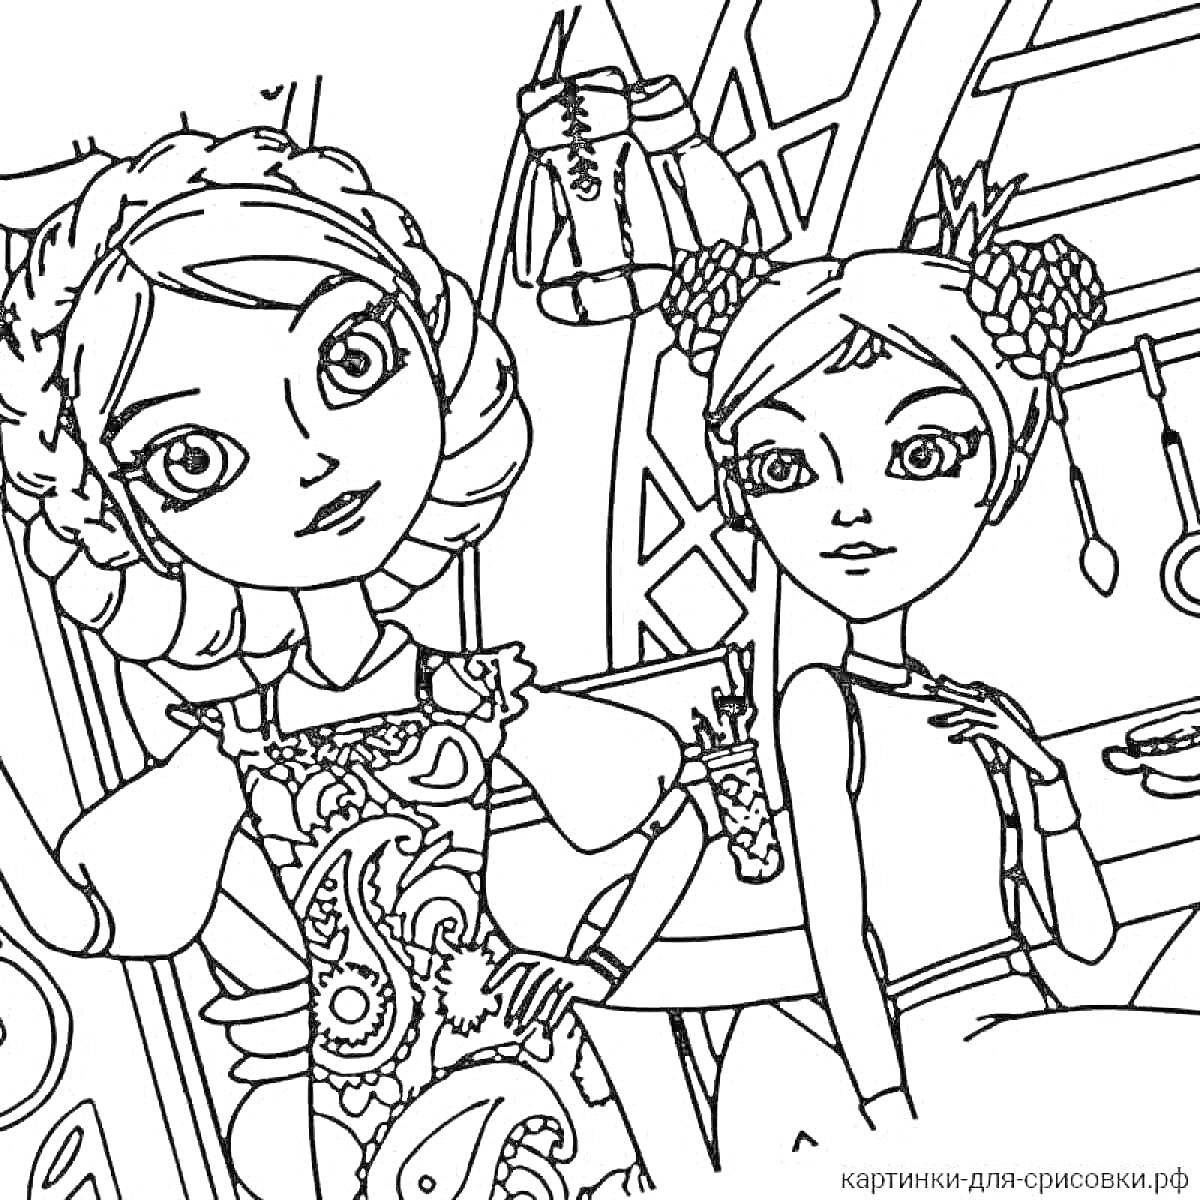 Раскраска Две царевны в нарядах с украшенными причёсками в помещении с полками и кухонной утварью